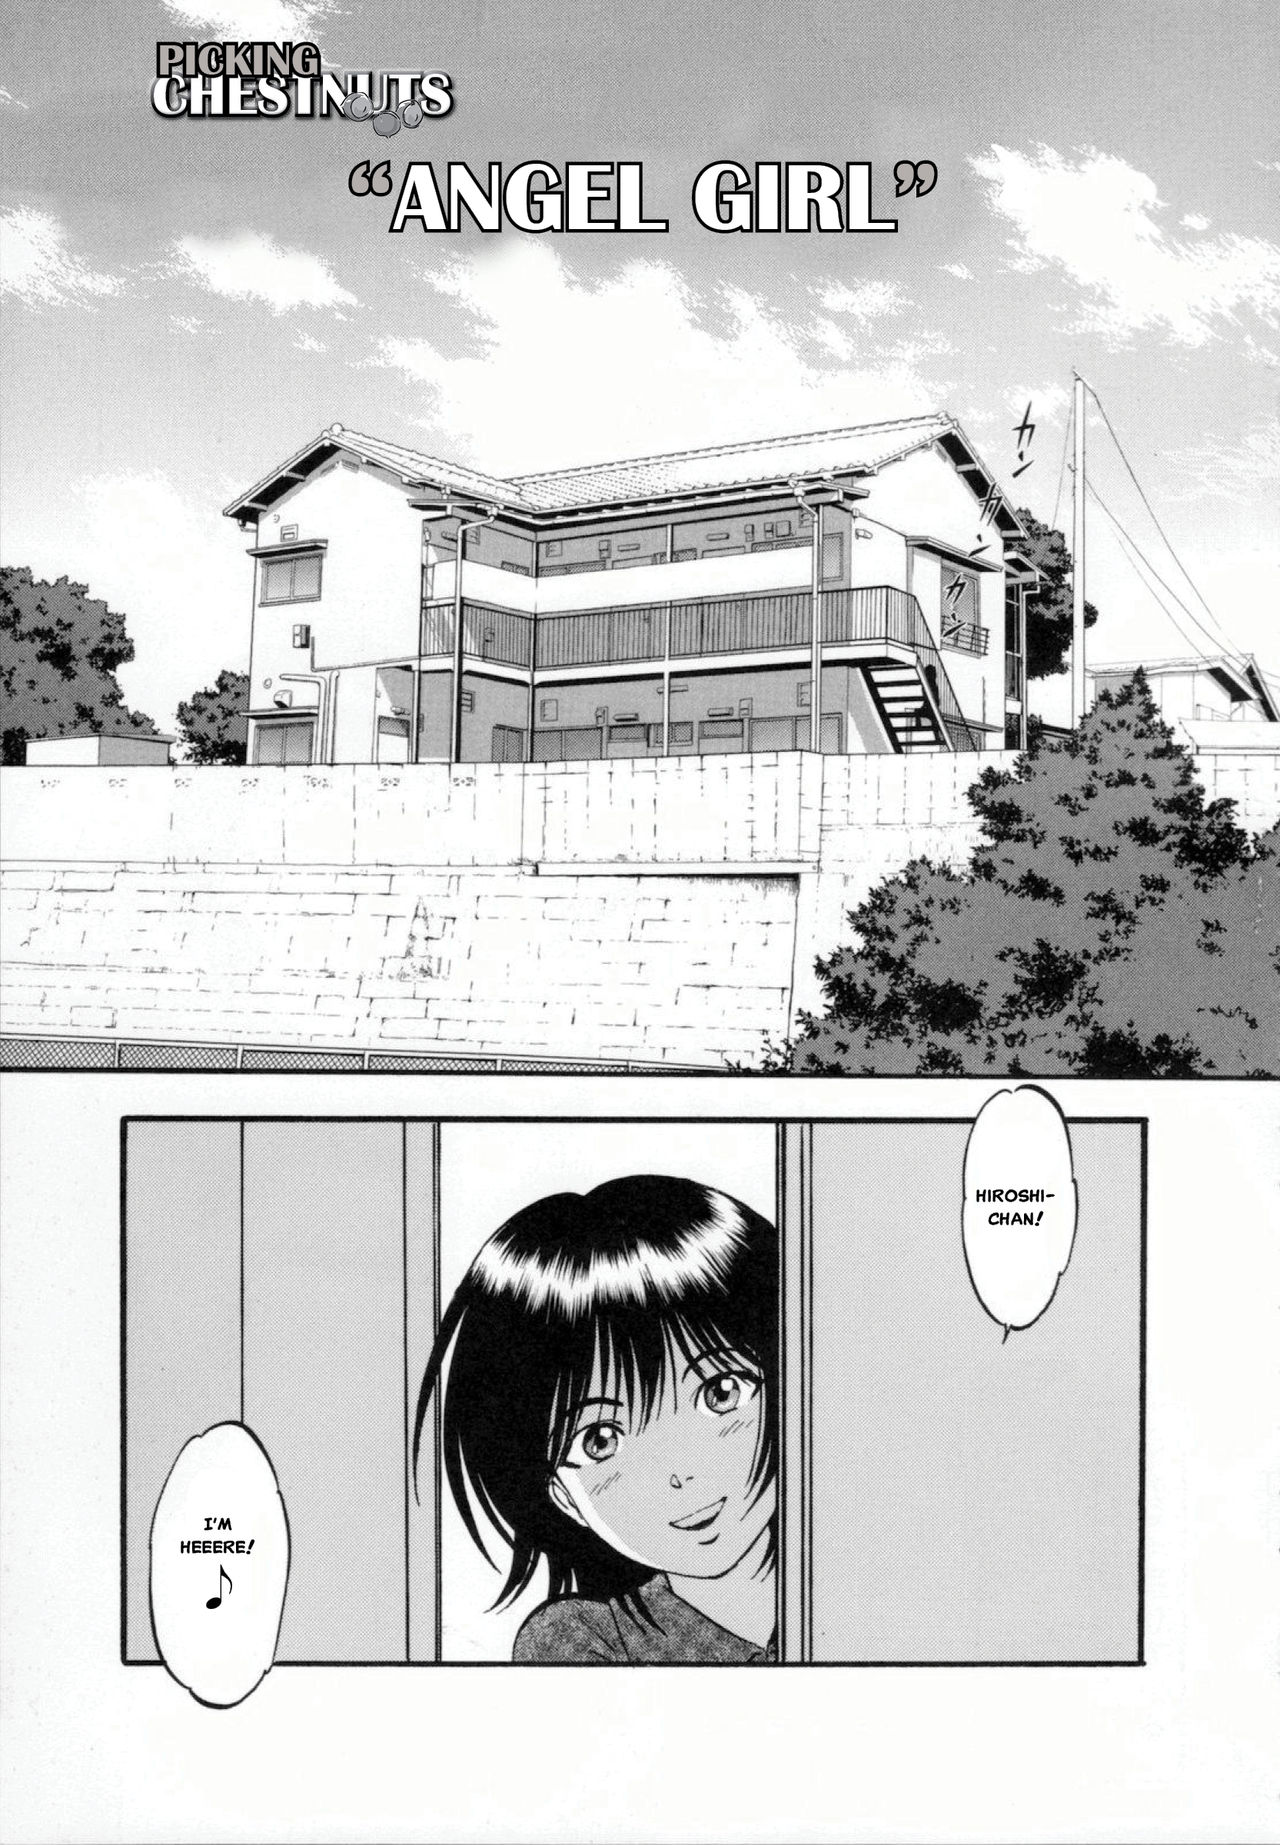 R Shitei - Page 1